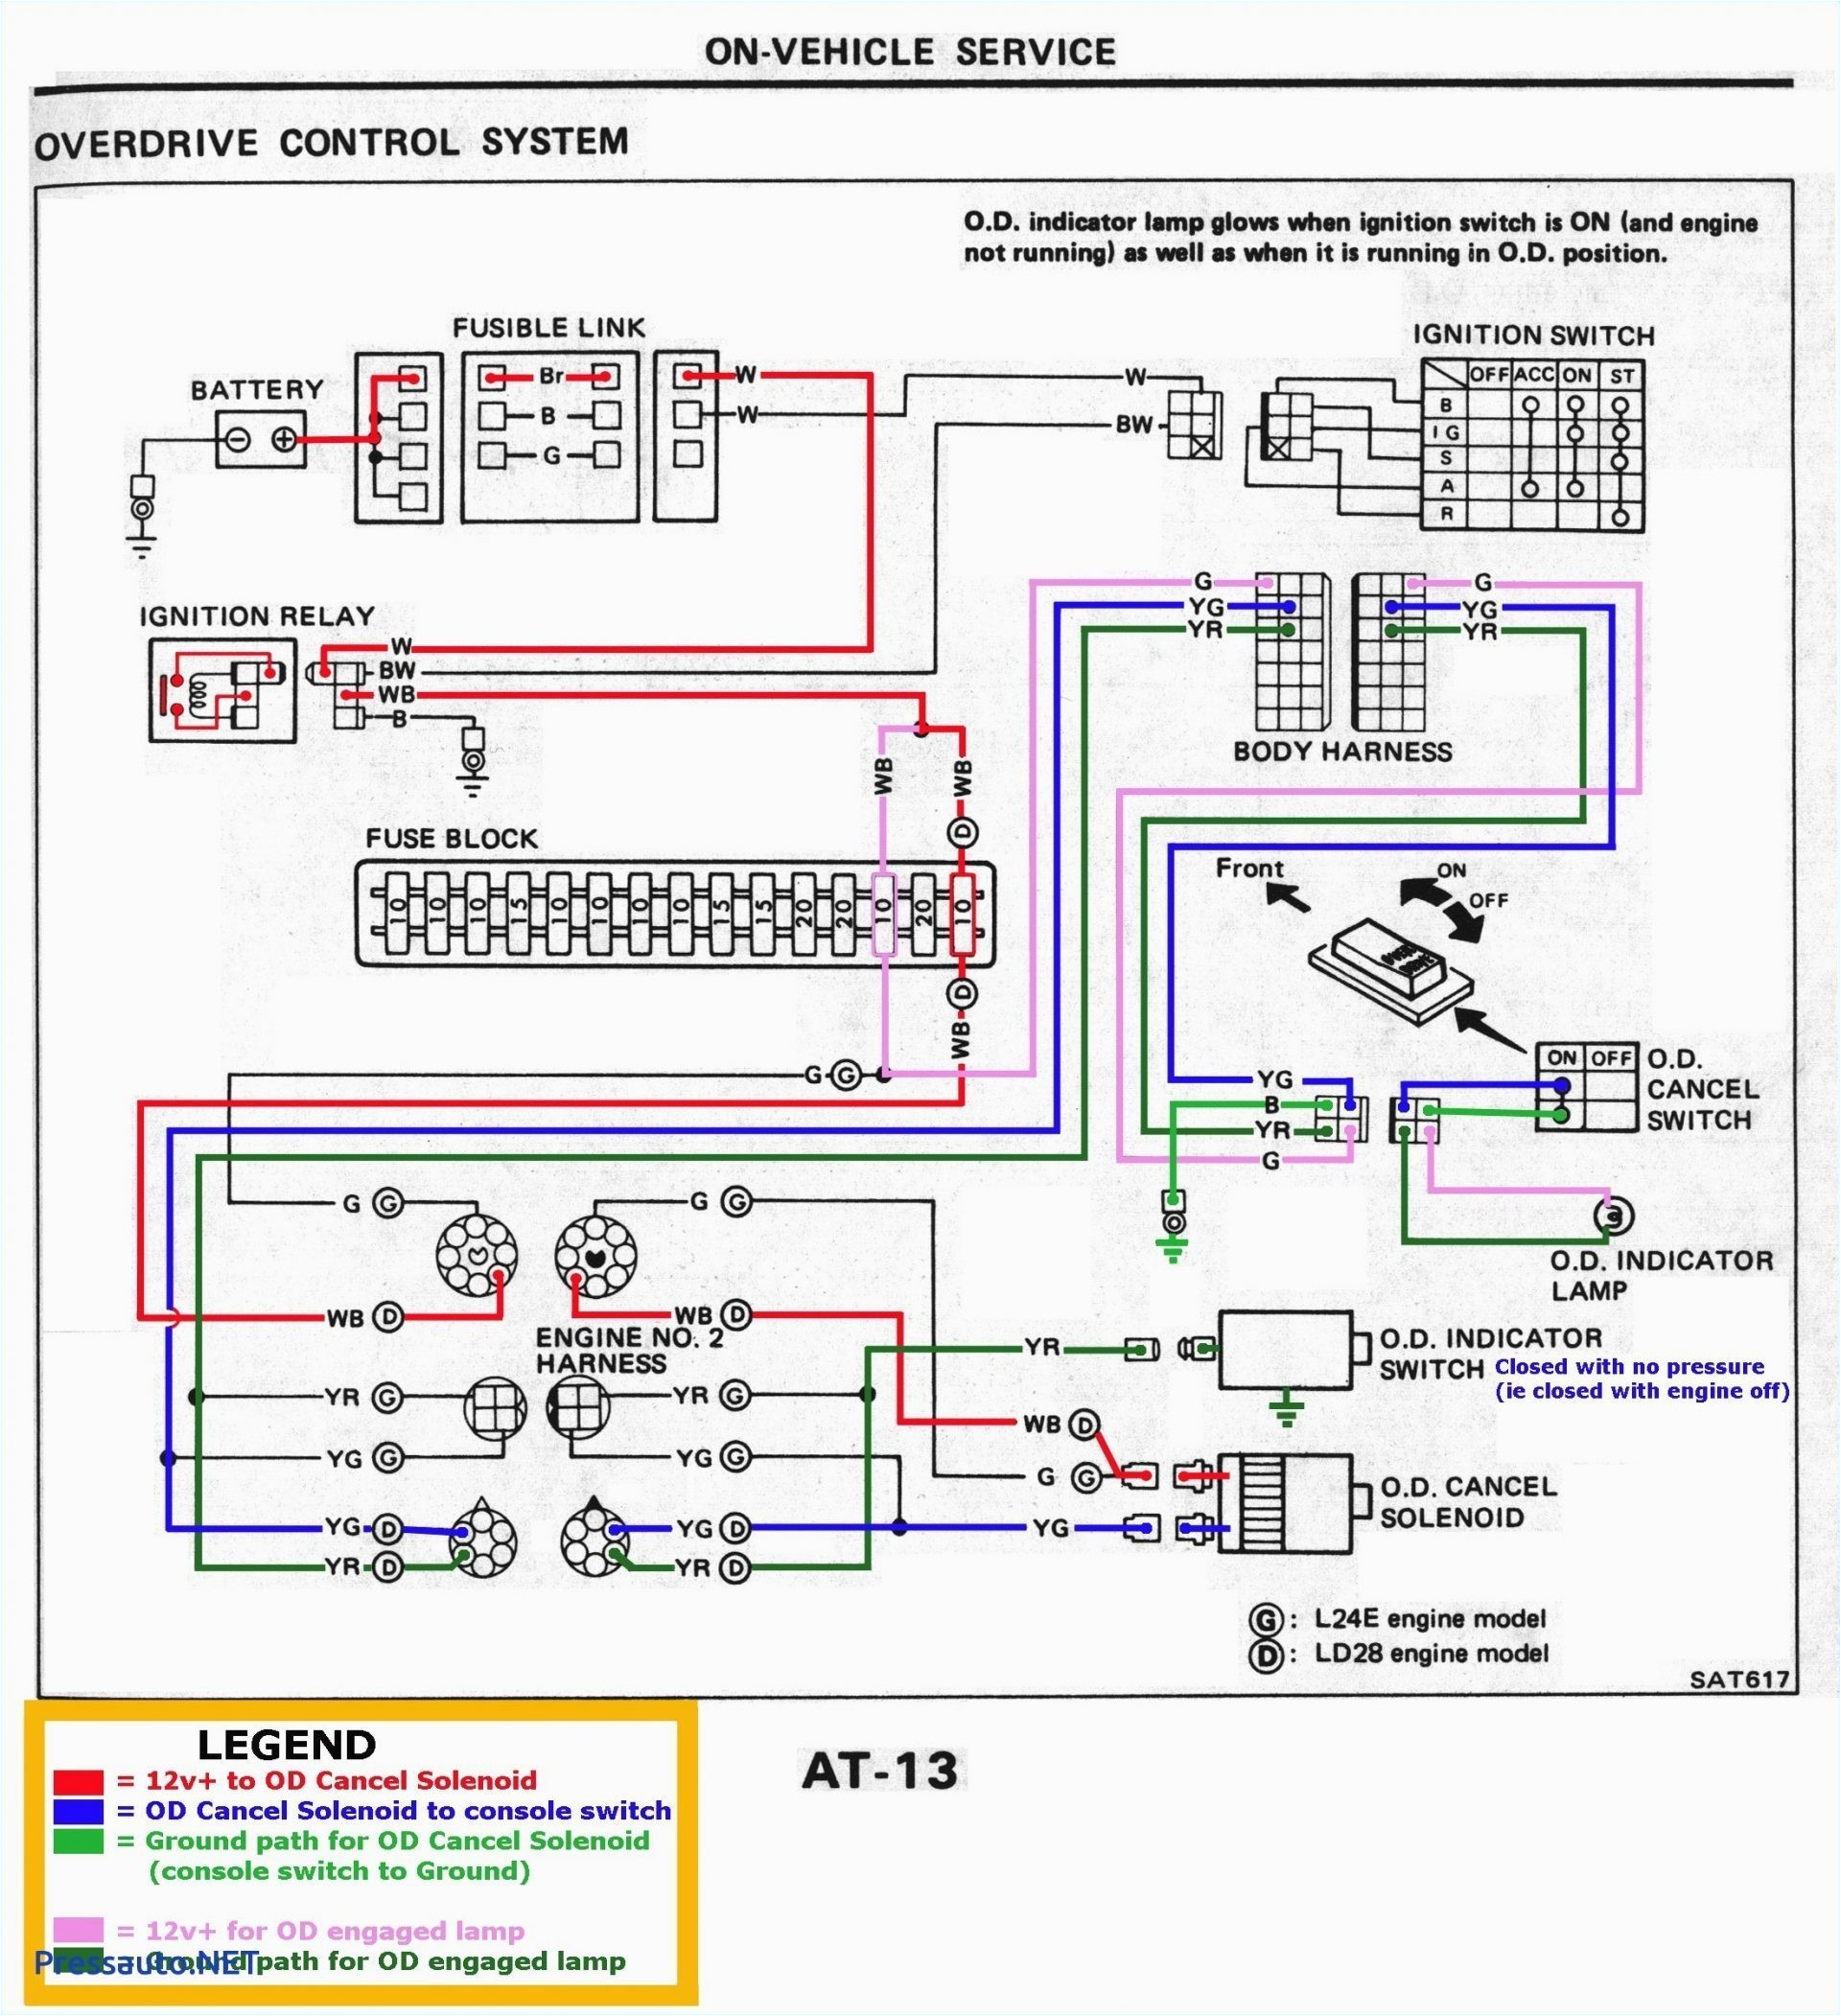 diions wiring diagram wiring diagram schema 240voltdryerwiringdiagram 220 volt dryer outlet wiring success